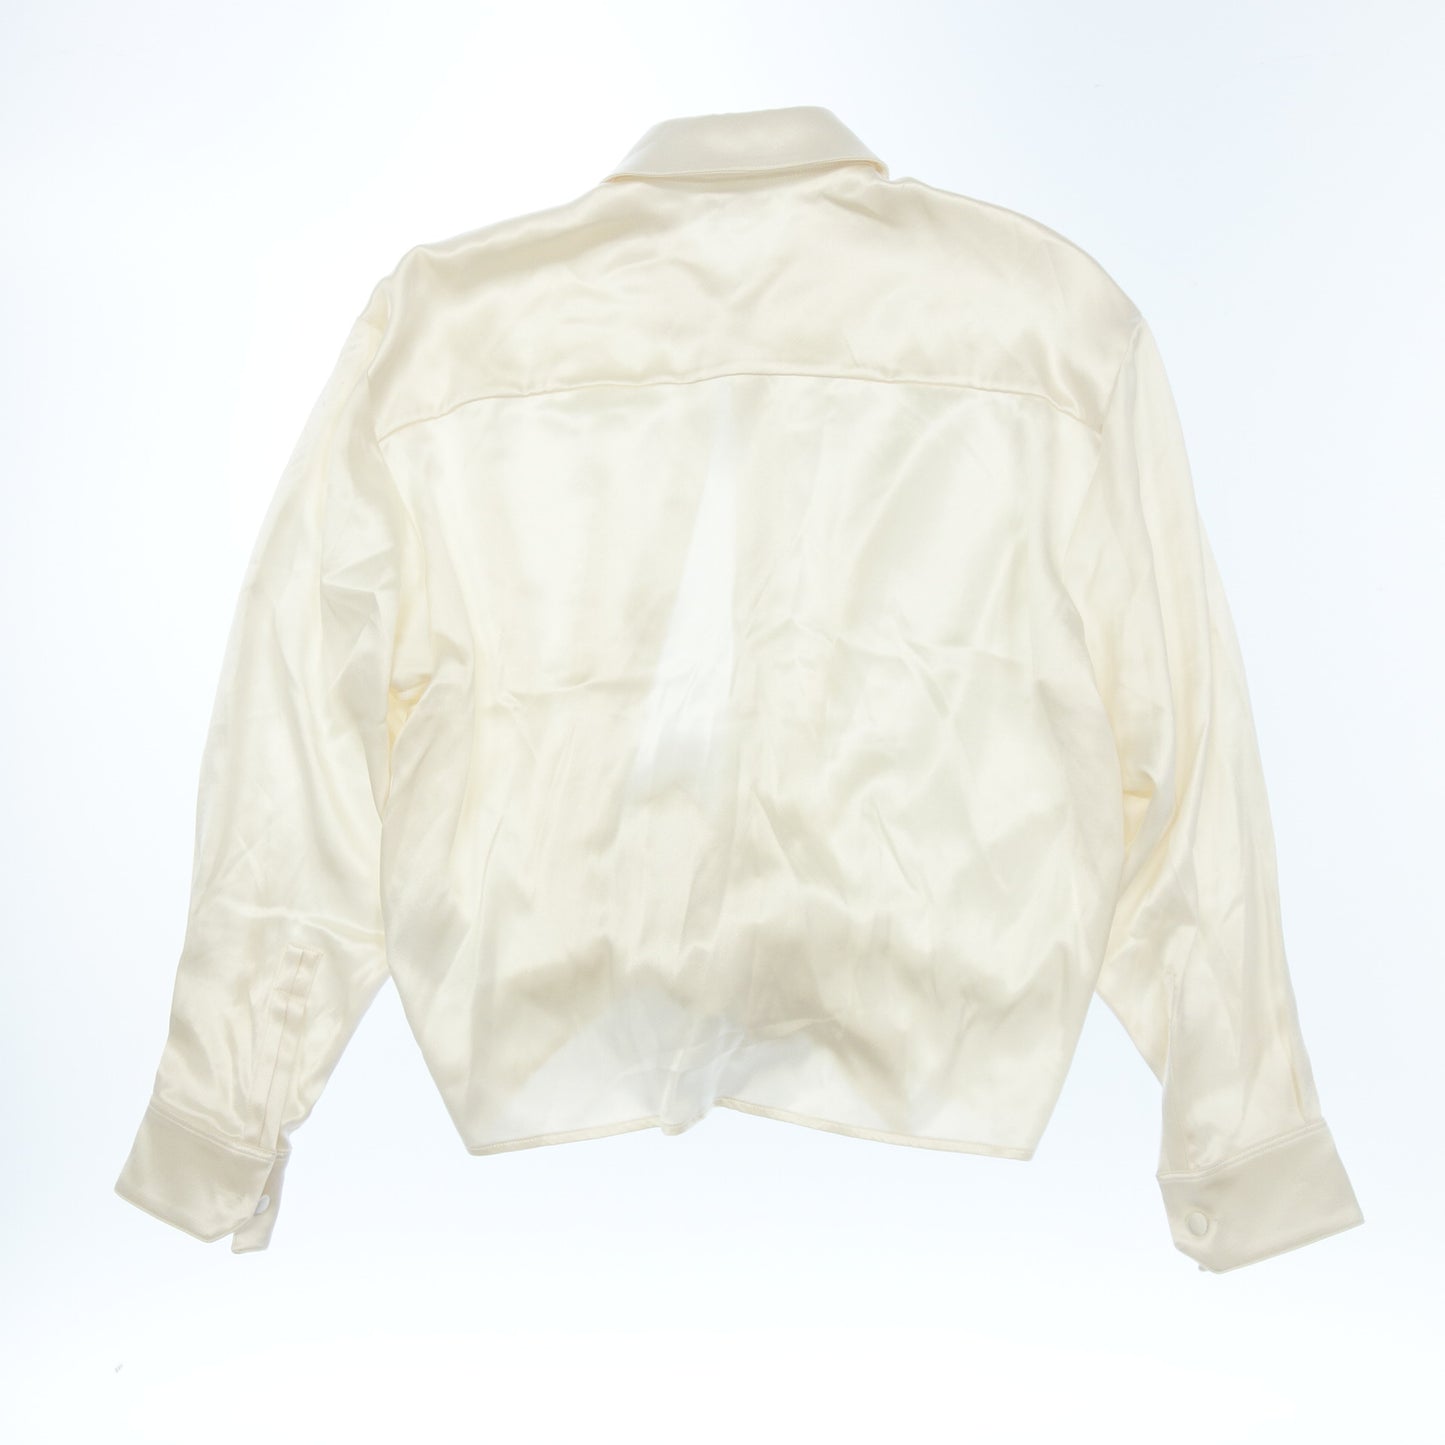 二手 ◆Saint Laurent 长袖衬衫丝绸 609404 女士米色尺寸 36 SAINT LAURENT [AFB17] 